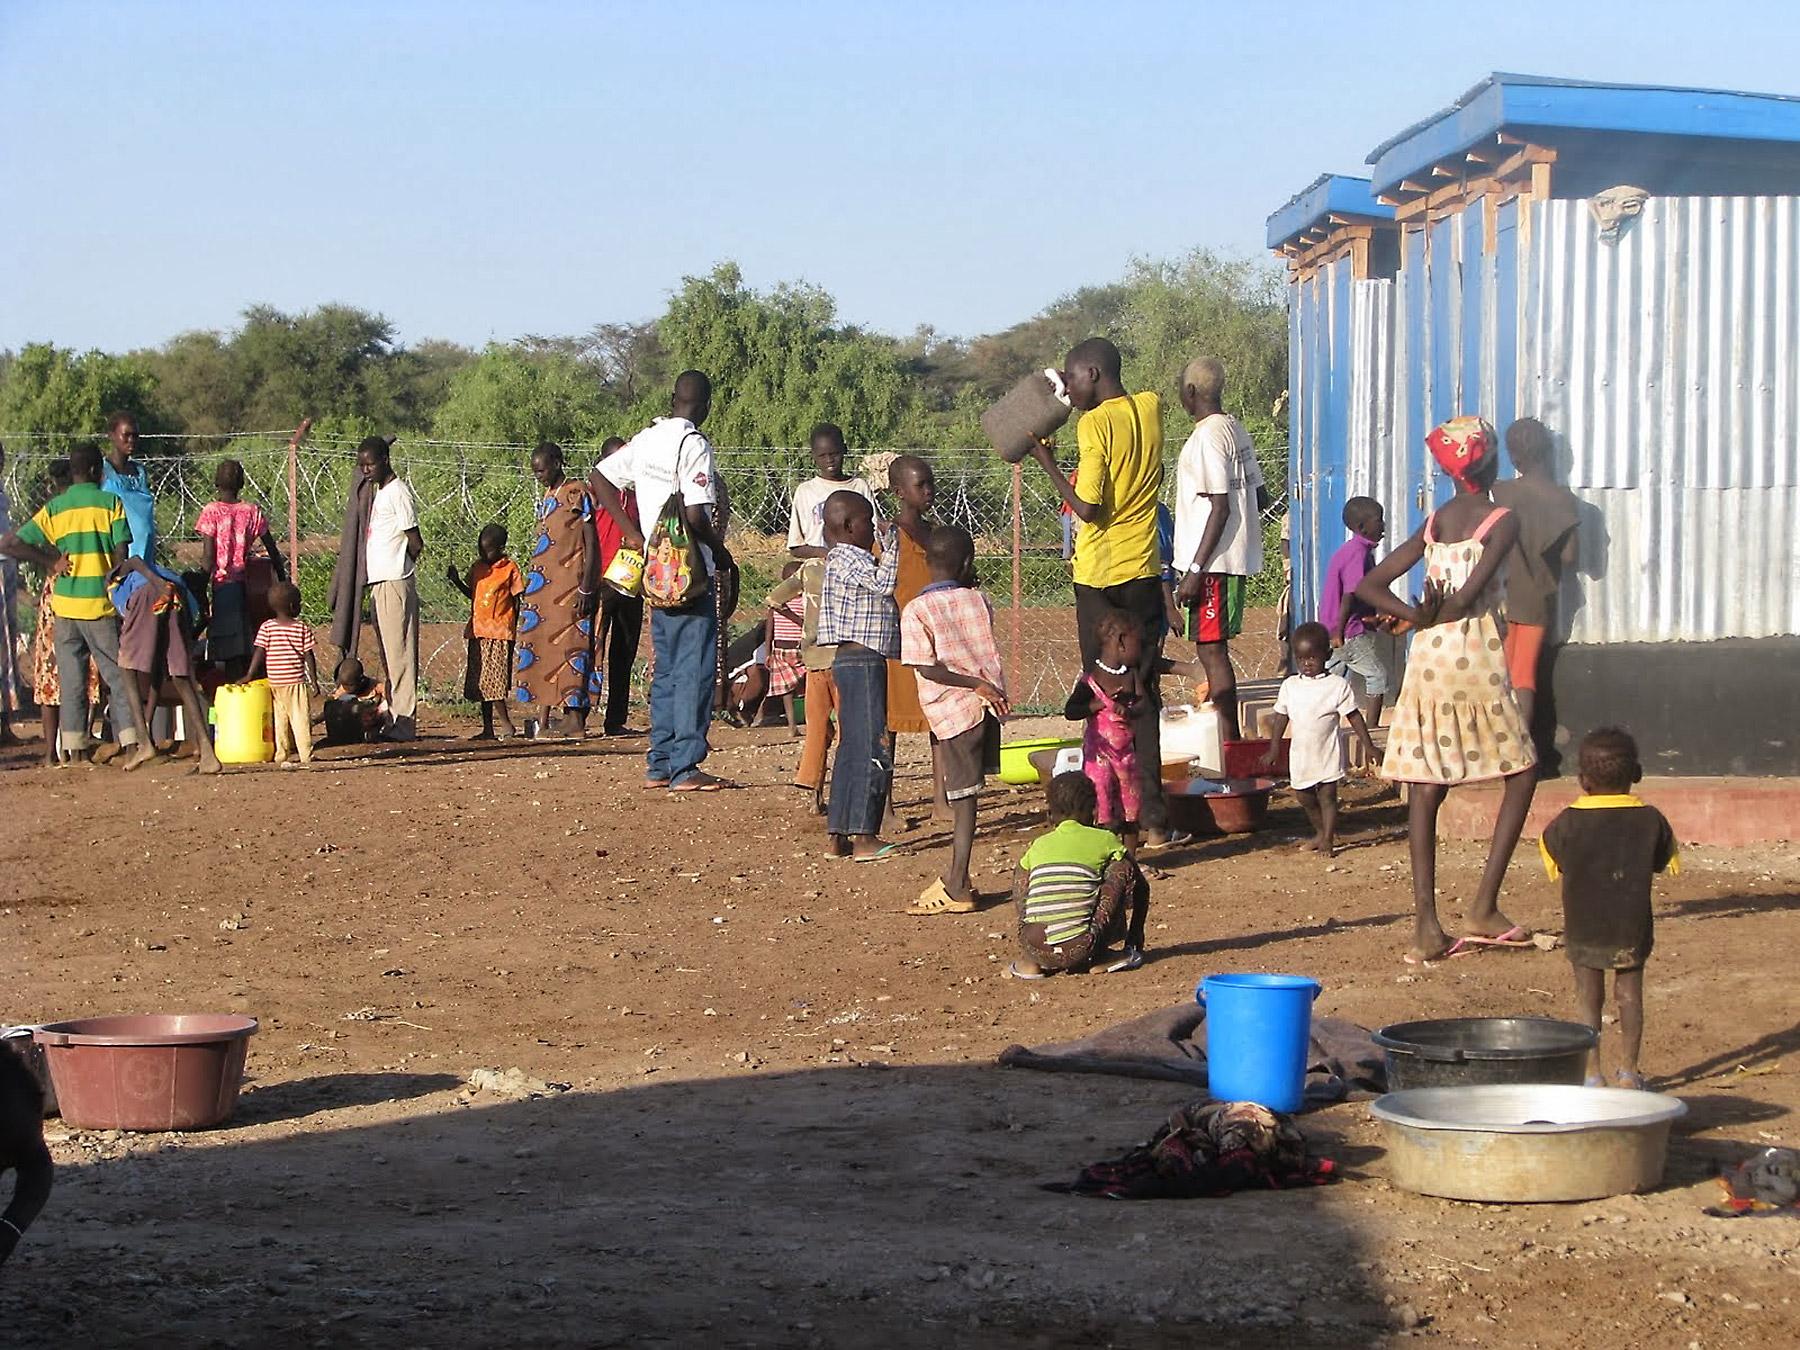 Flüchtlinge, die der Krise im Südsudan zu entkommen suchen, bei ihrer Ankunft im Flüchtlingslager Kakuma in Kenia. Foto: LWB/J. Macharia